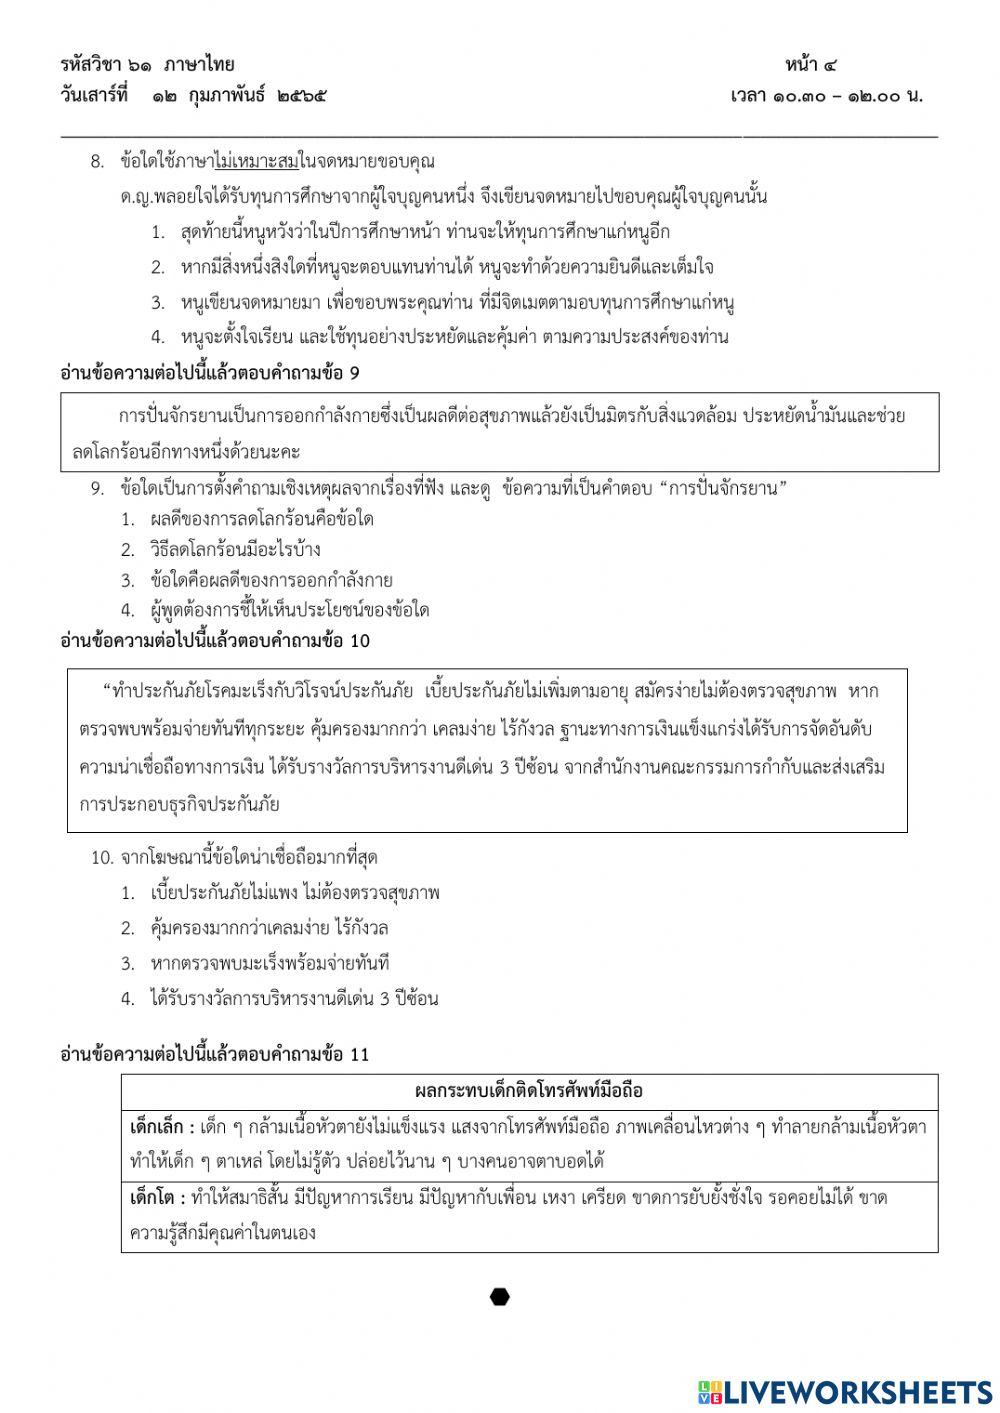 แบบทดสอบ Pre O-NET วิชาภาษาไทย ป.6 ปีการศึกษา 2564